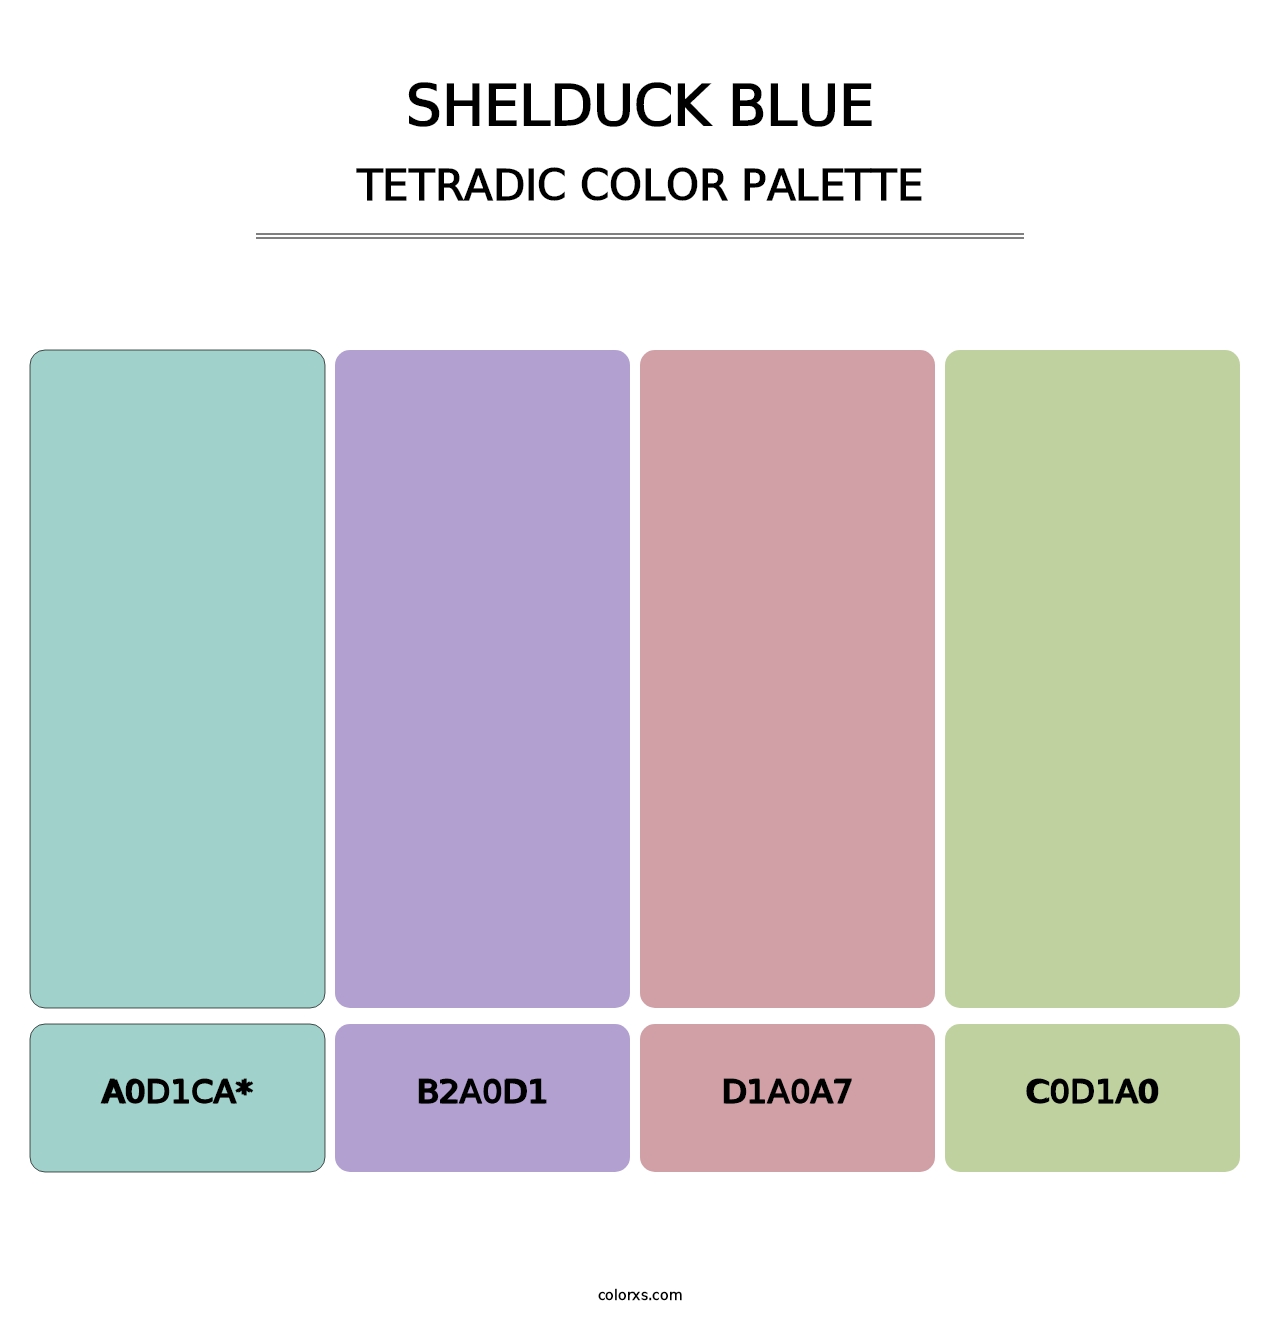 Shelduck Blue - Tetradic Color Palette